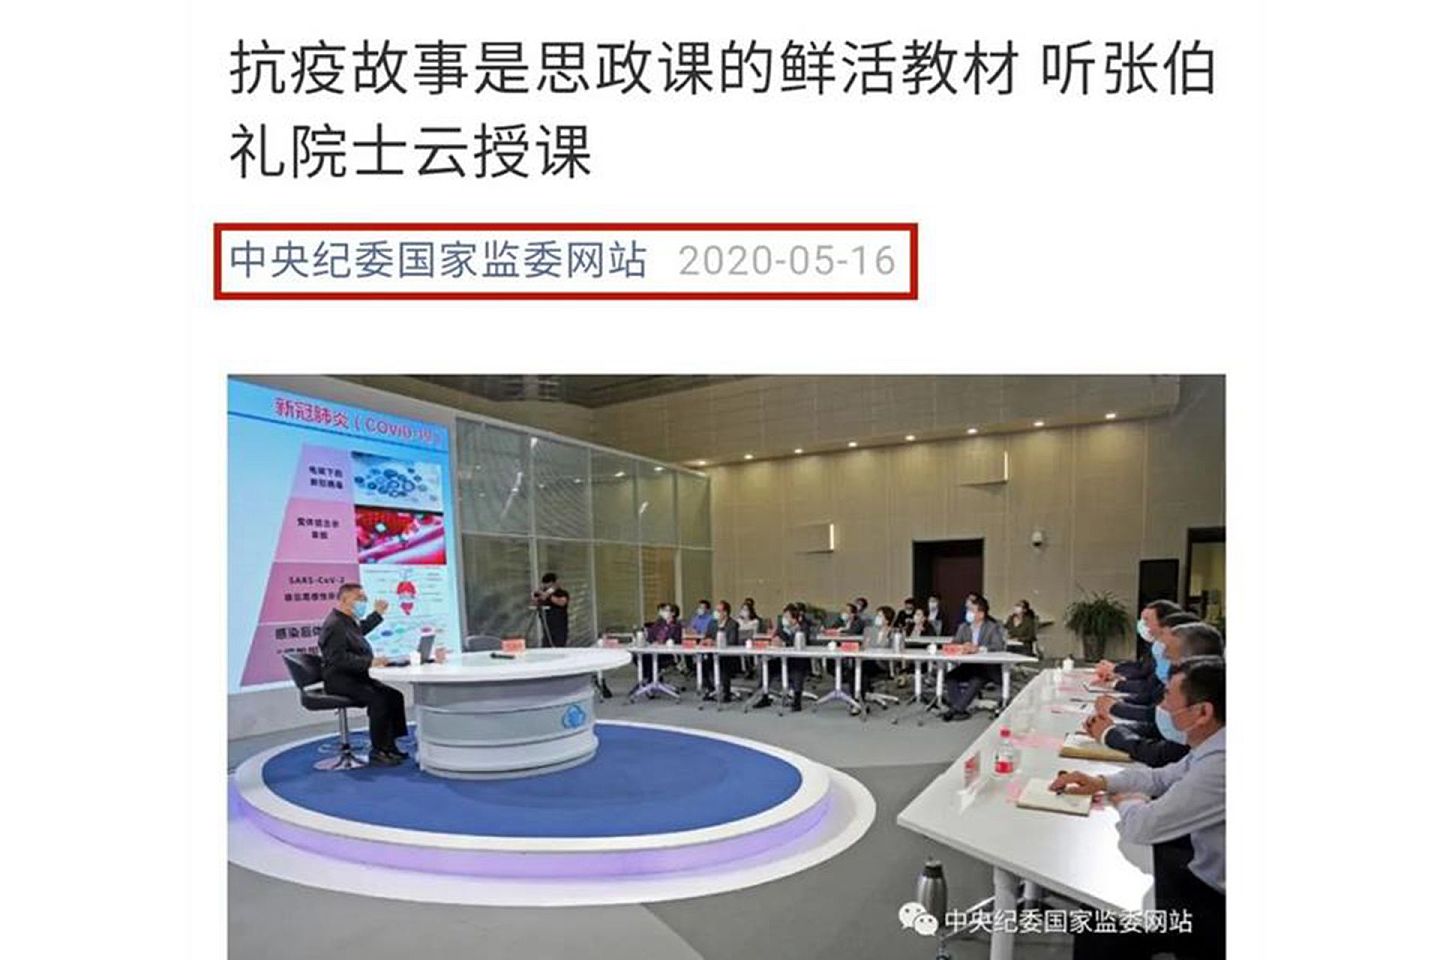 中国官方机构转载张伯礼批评方方的视频。图为中纪委官微发布的有关张伯礼的文章。（中纪委公号截图）